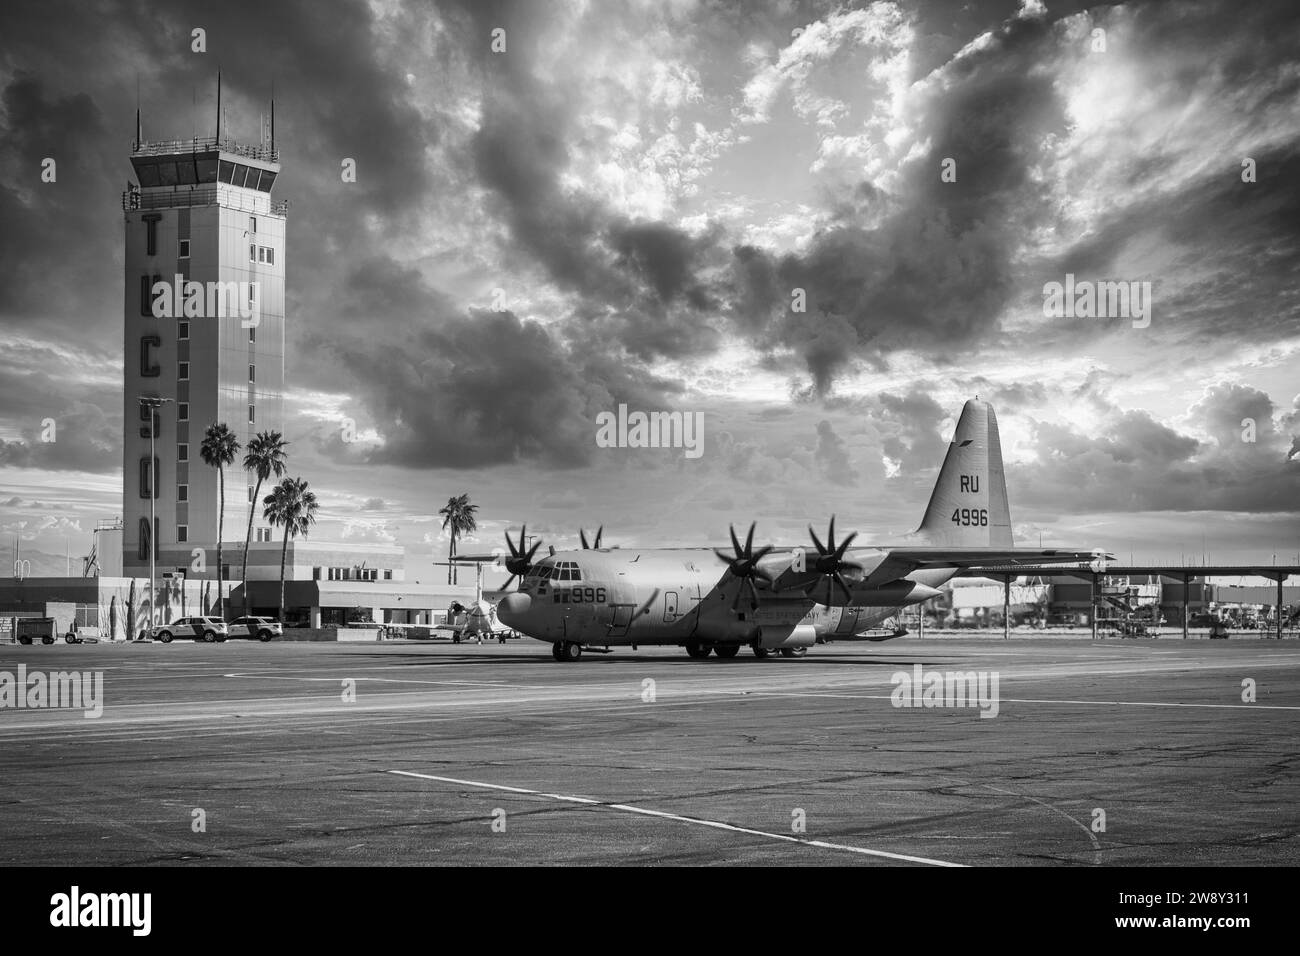 C130 della Marina degli Stati Uniti d'America davanti alla Torre di controllo presso l'aeroporto internazionale di Tucson in Arizona Foto Stock